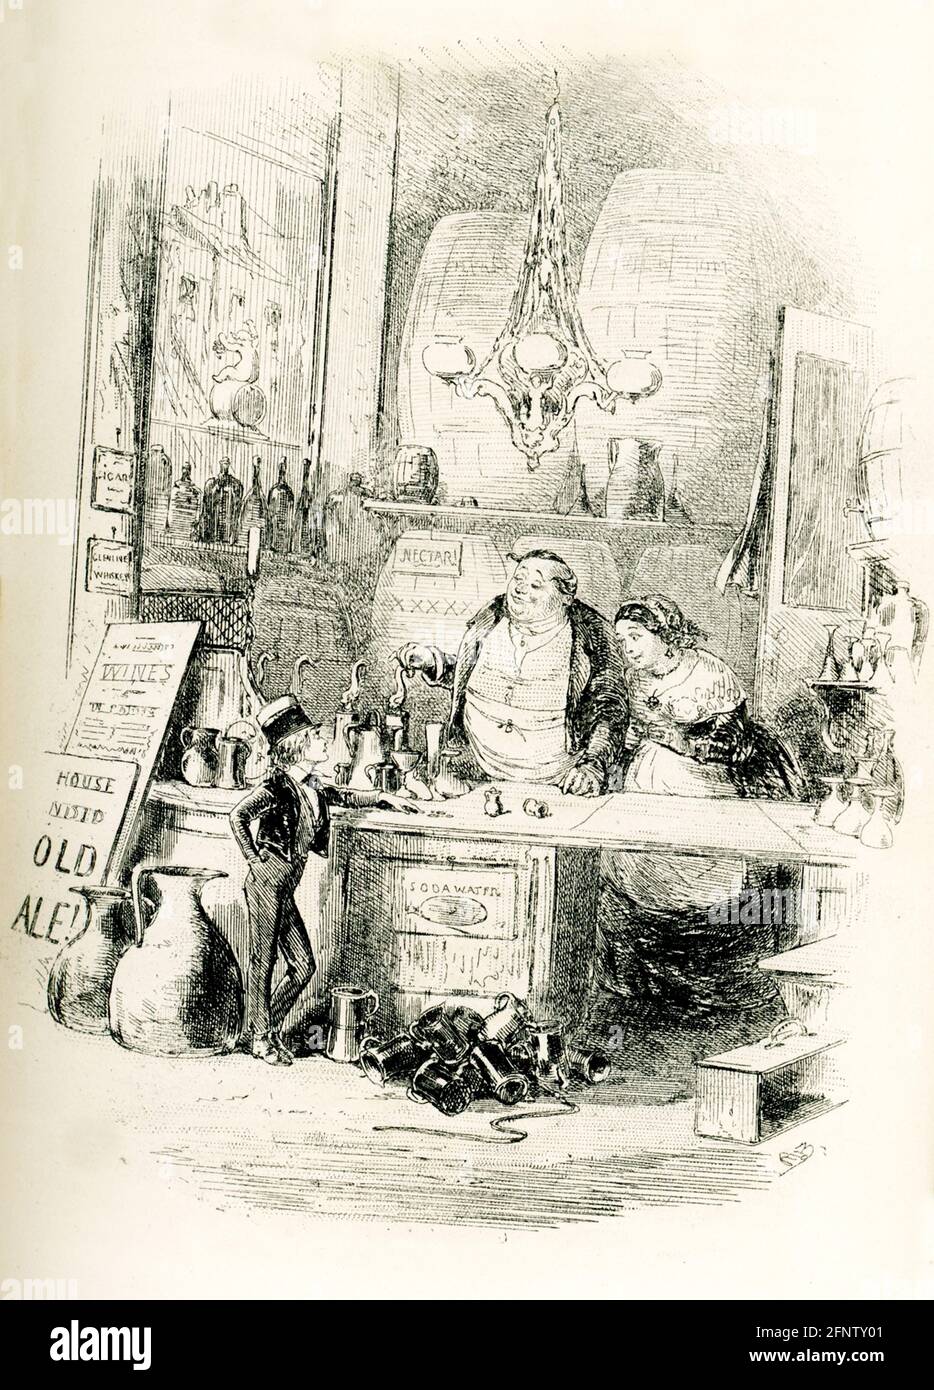 Il romanziere inglese Charles Dickens (1837–1870) pubblicò il suo romanzo David Copperfield descrivendo in dettaglio le sue avventure nel suo viaggio dall'infanzia alla maturità. Fu pubblicato per la prima volta come serie nel 1849–50, e come libro nel 1850. L'illustratore era Hablot Browne. Lo pseudonimo di Browne era 'Phiz'; Dickens' era 'Boz'. Si noti il nome "Phiz" sotto questa illustrazione di Browne che ha la didascalia "il mio ordine magnifico alla Casa pubblica". Foto Stock